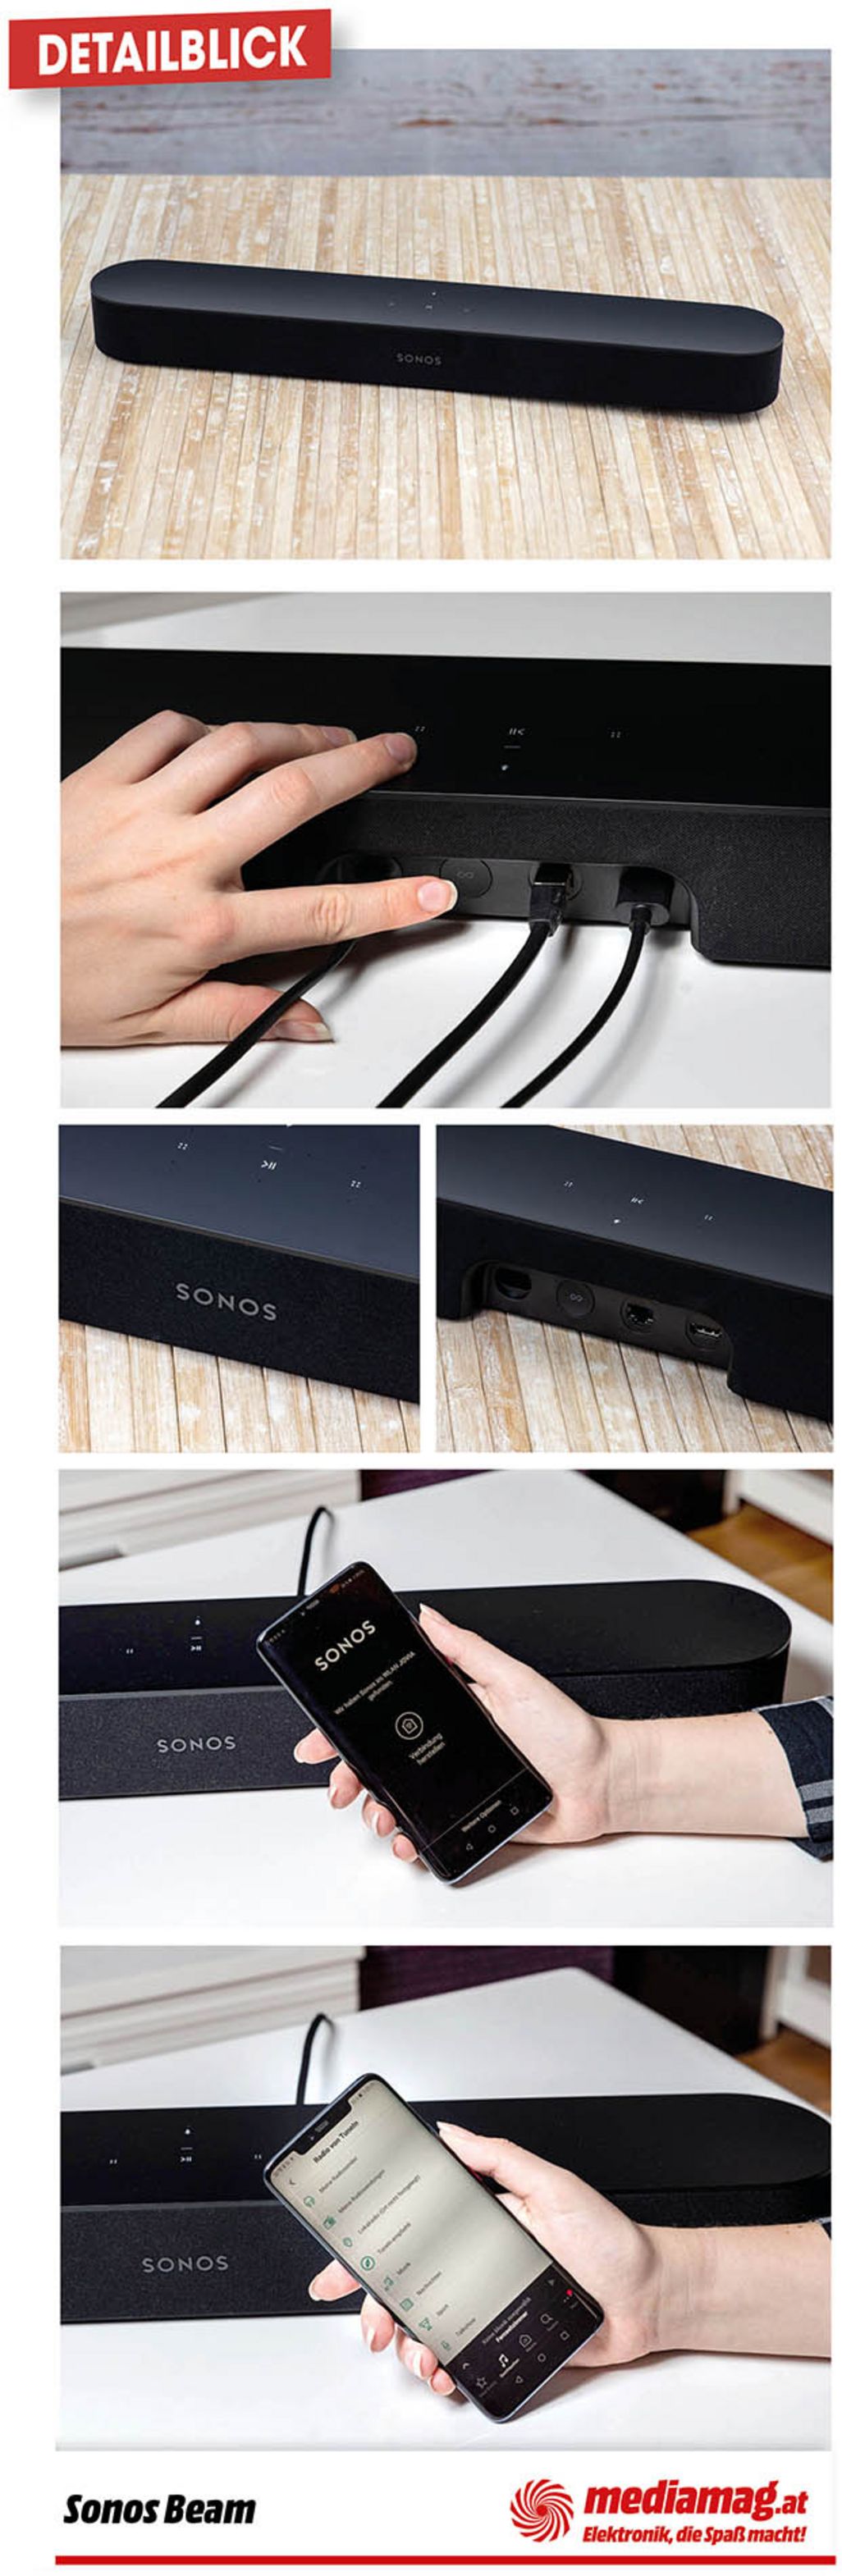 Sonos „Beam“ ist eine smarte Soundbar.